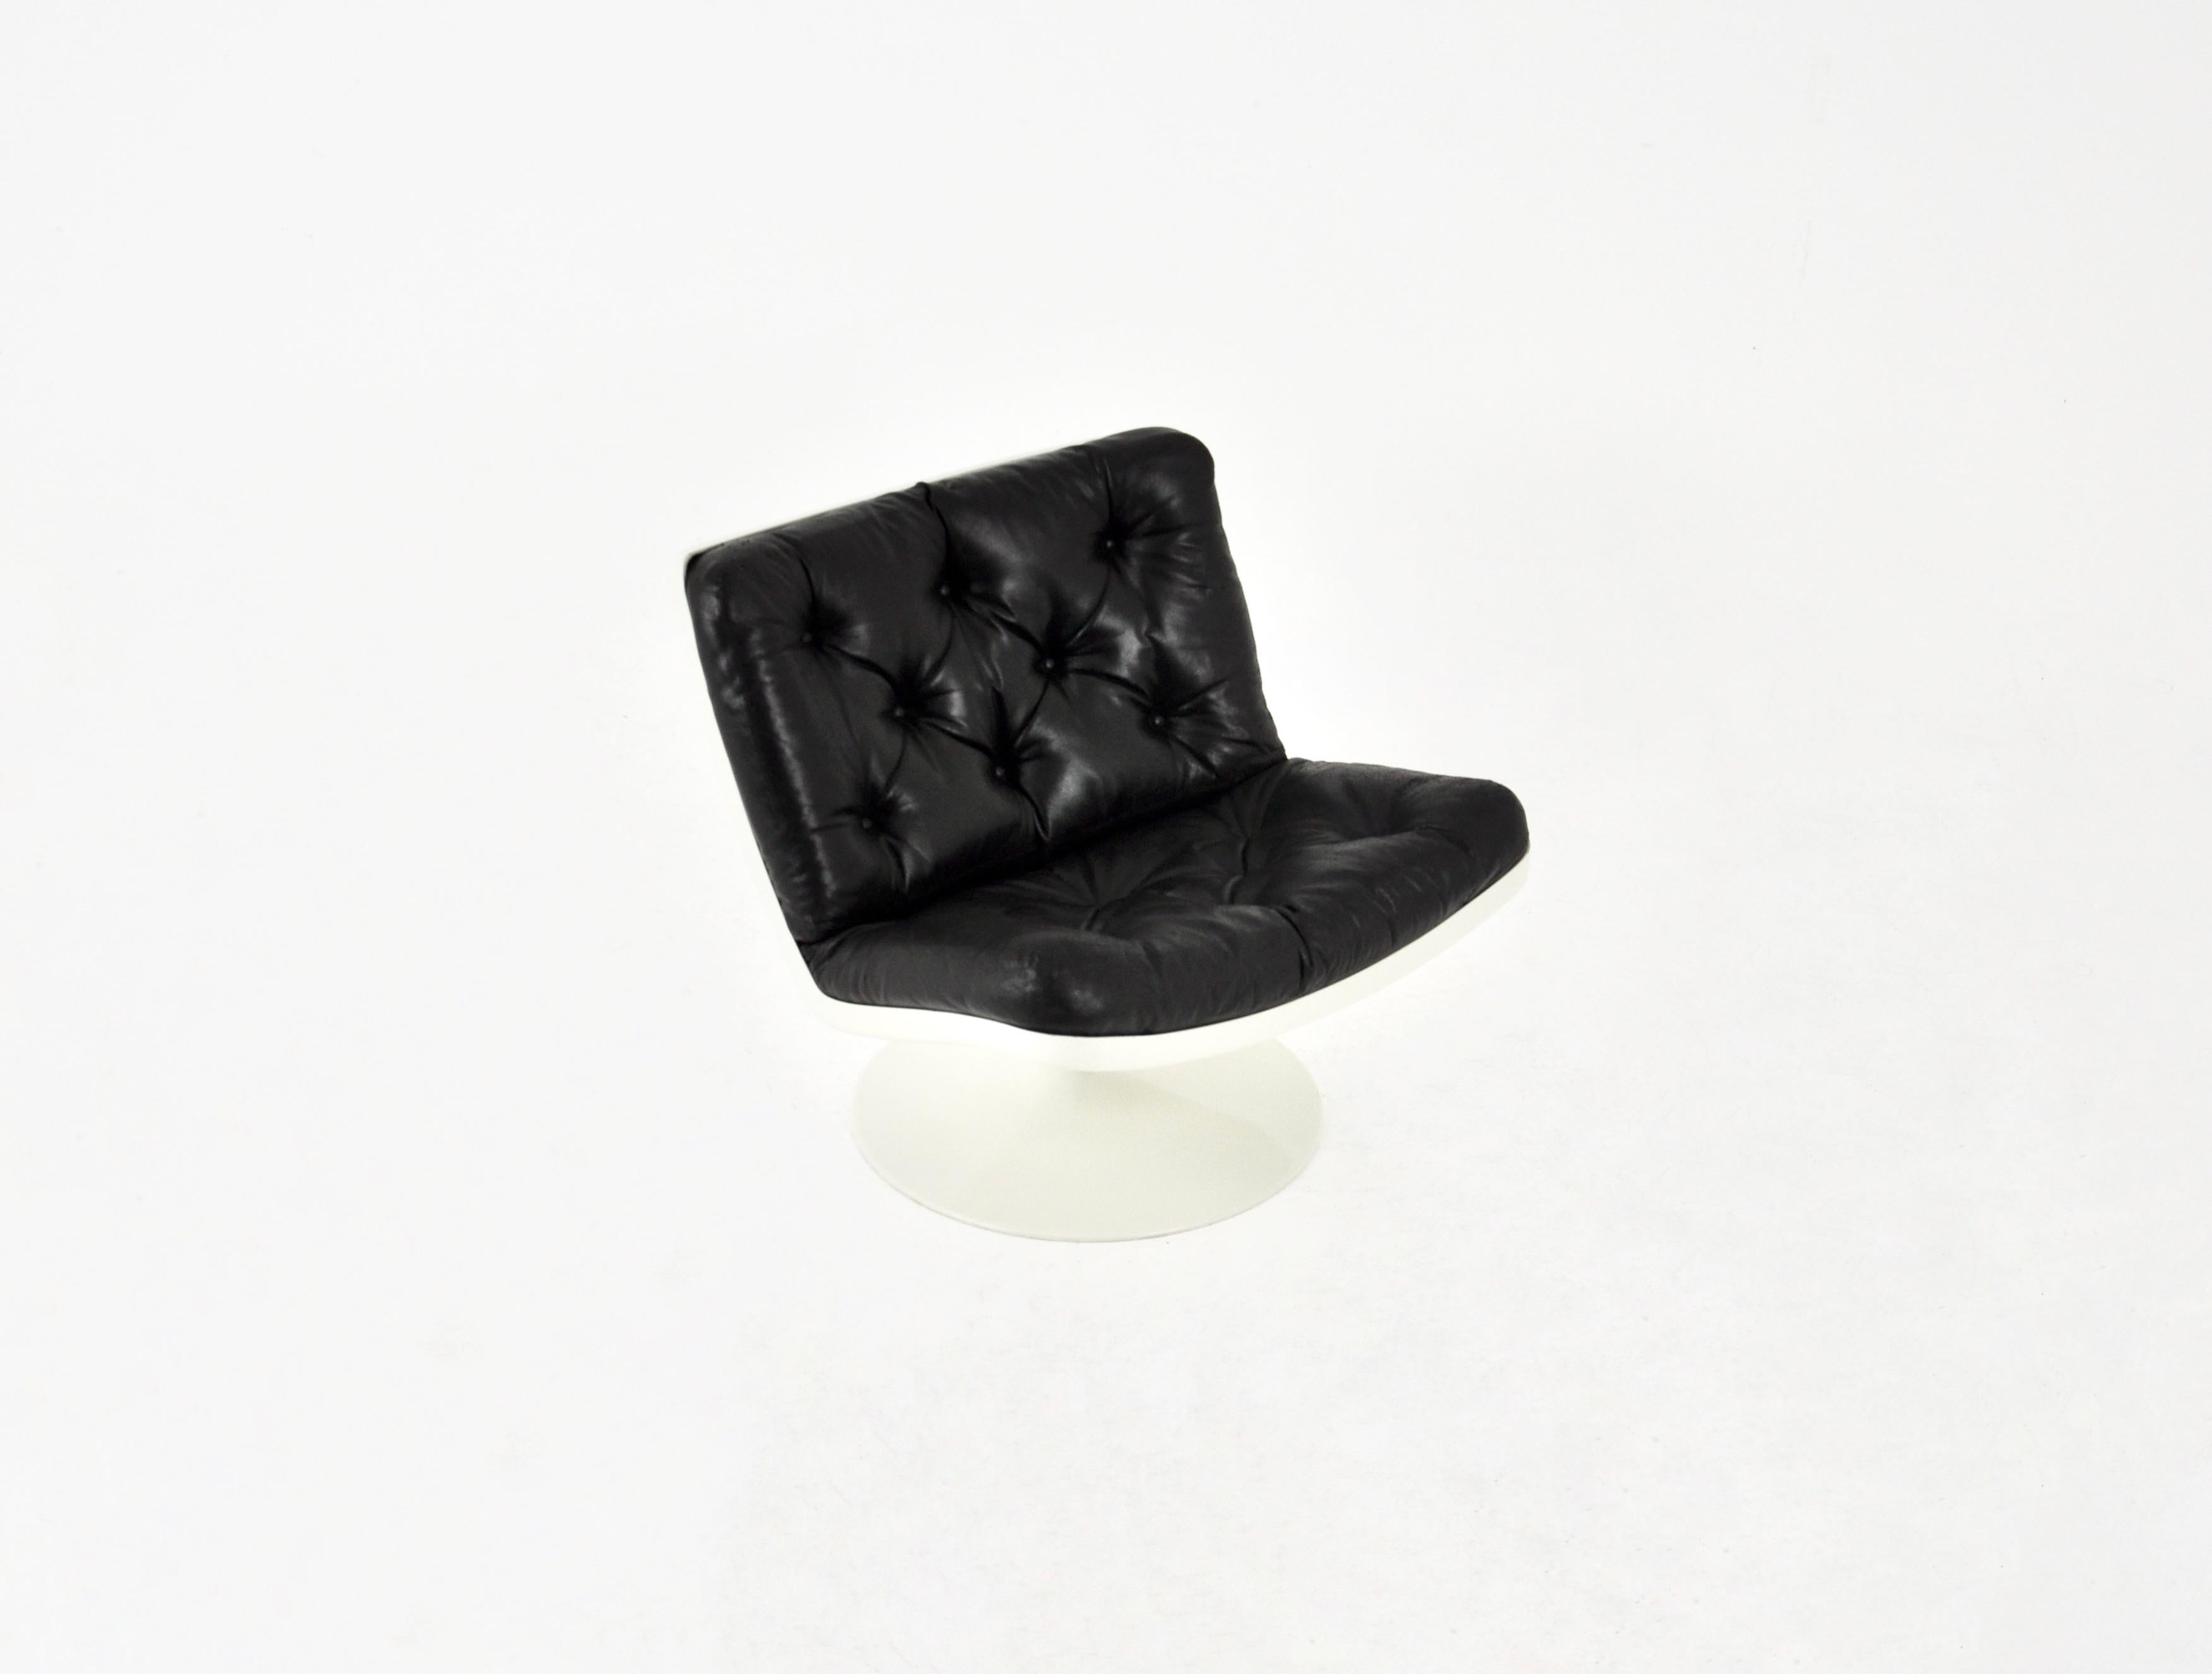 Fauteuil pivotant en cuir noir et coque en plastique. Hauteur du siège 43 cm. Usure due au temps et à l'âge.